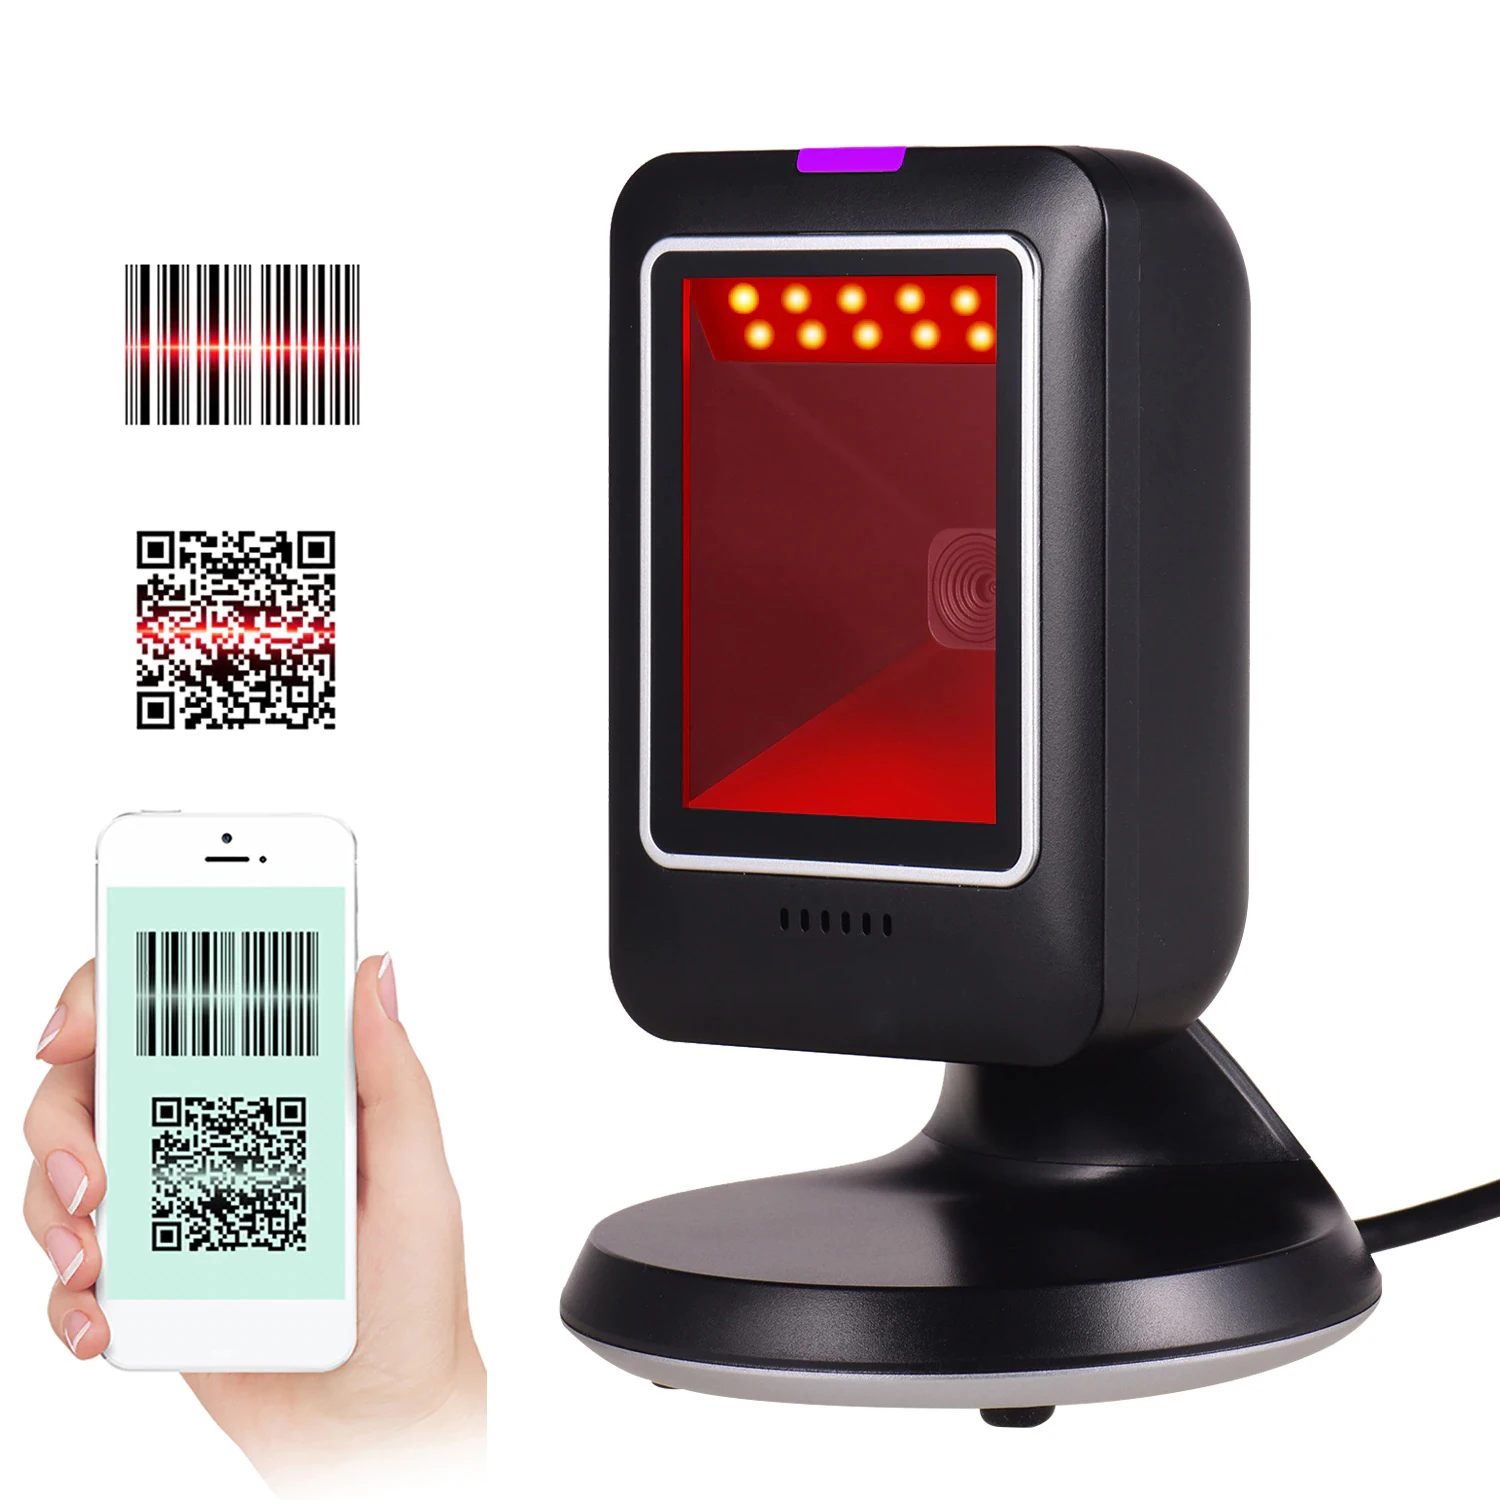 2D Scanner Omni scanner Barcode | GoldYSofT Sale Online